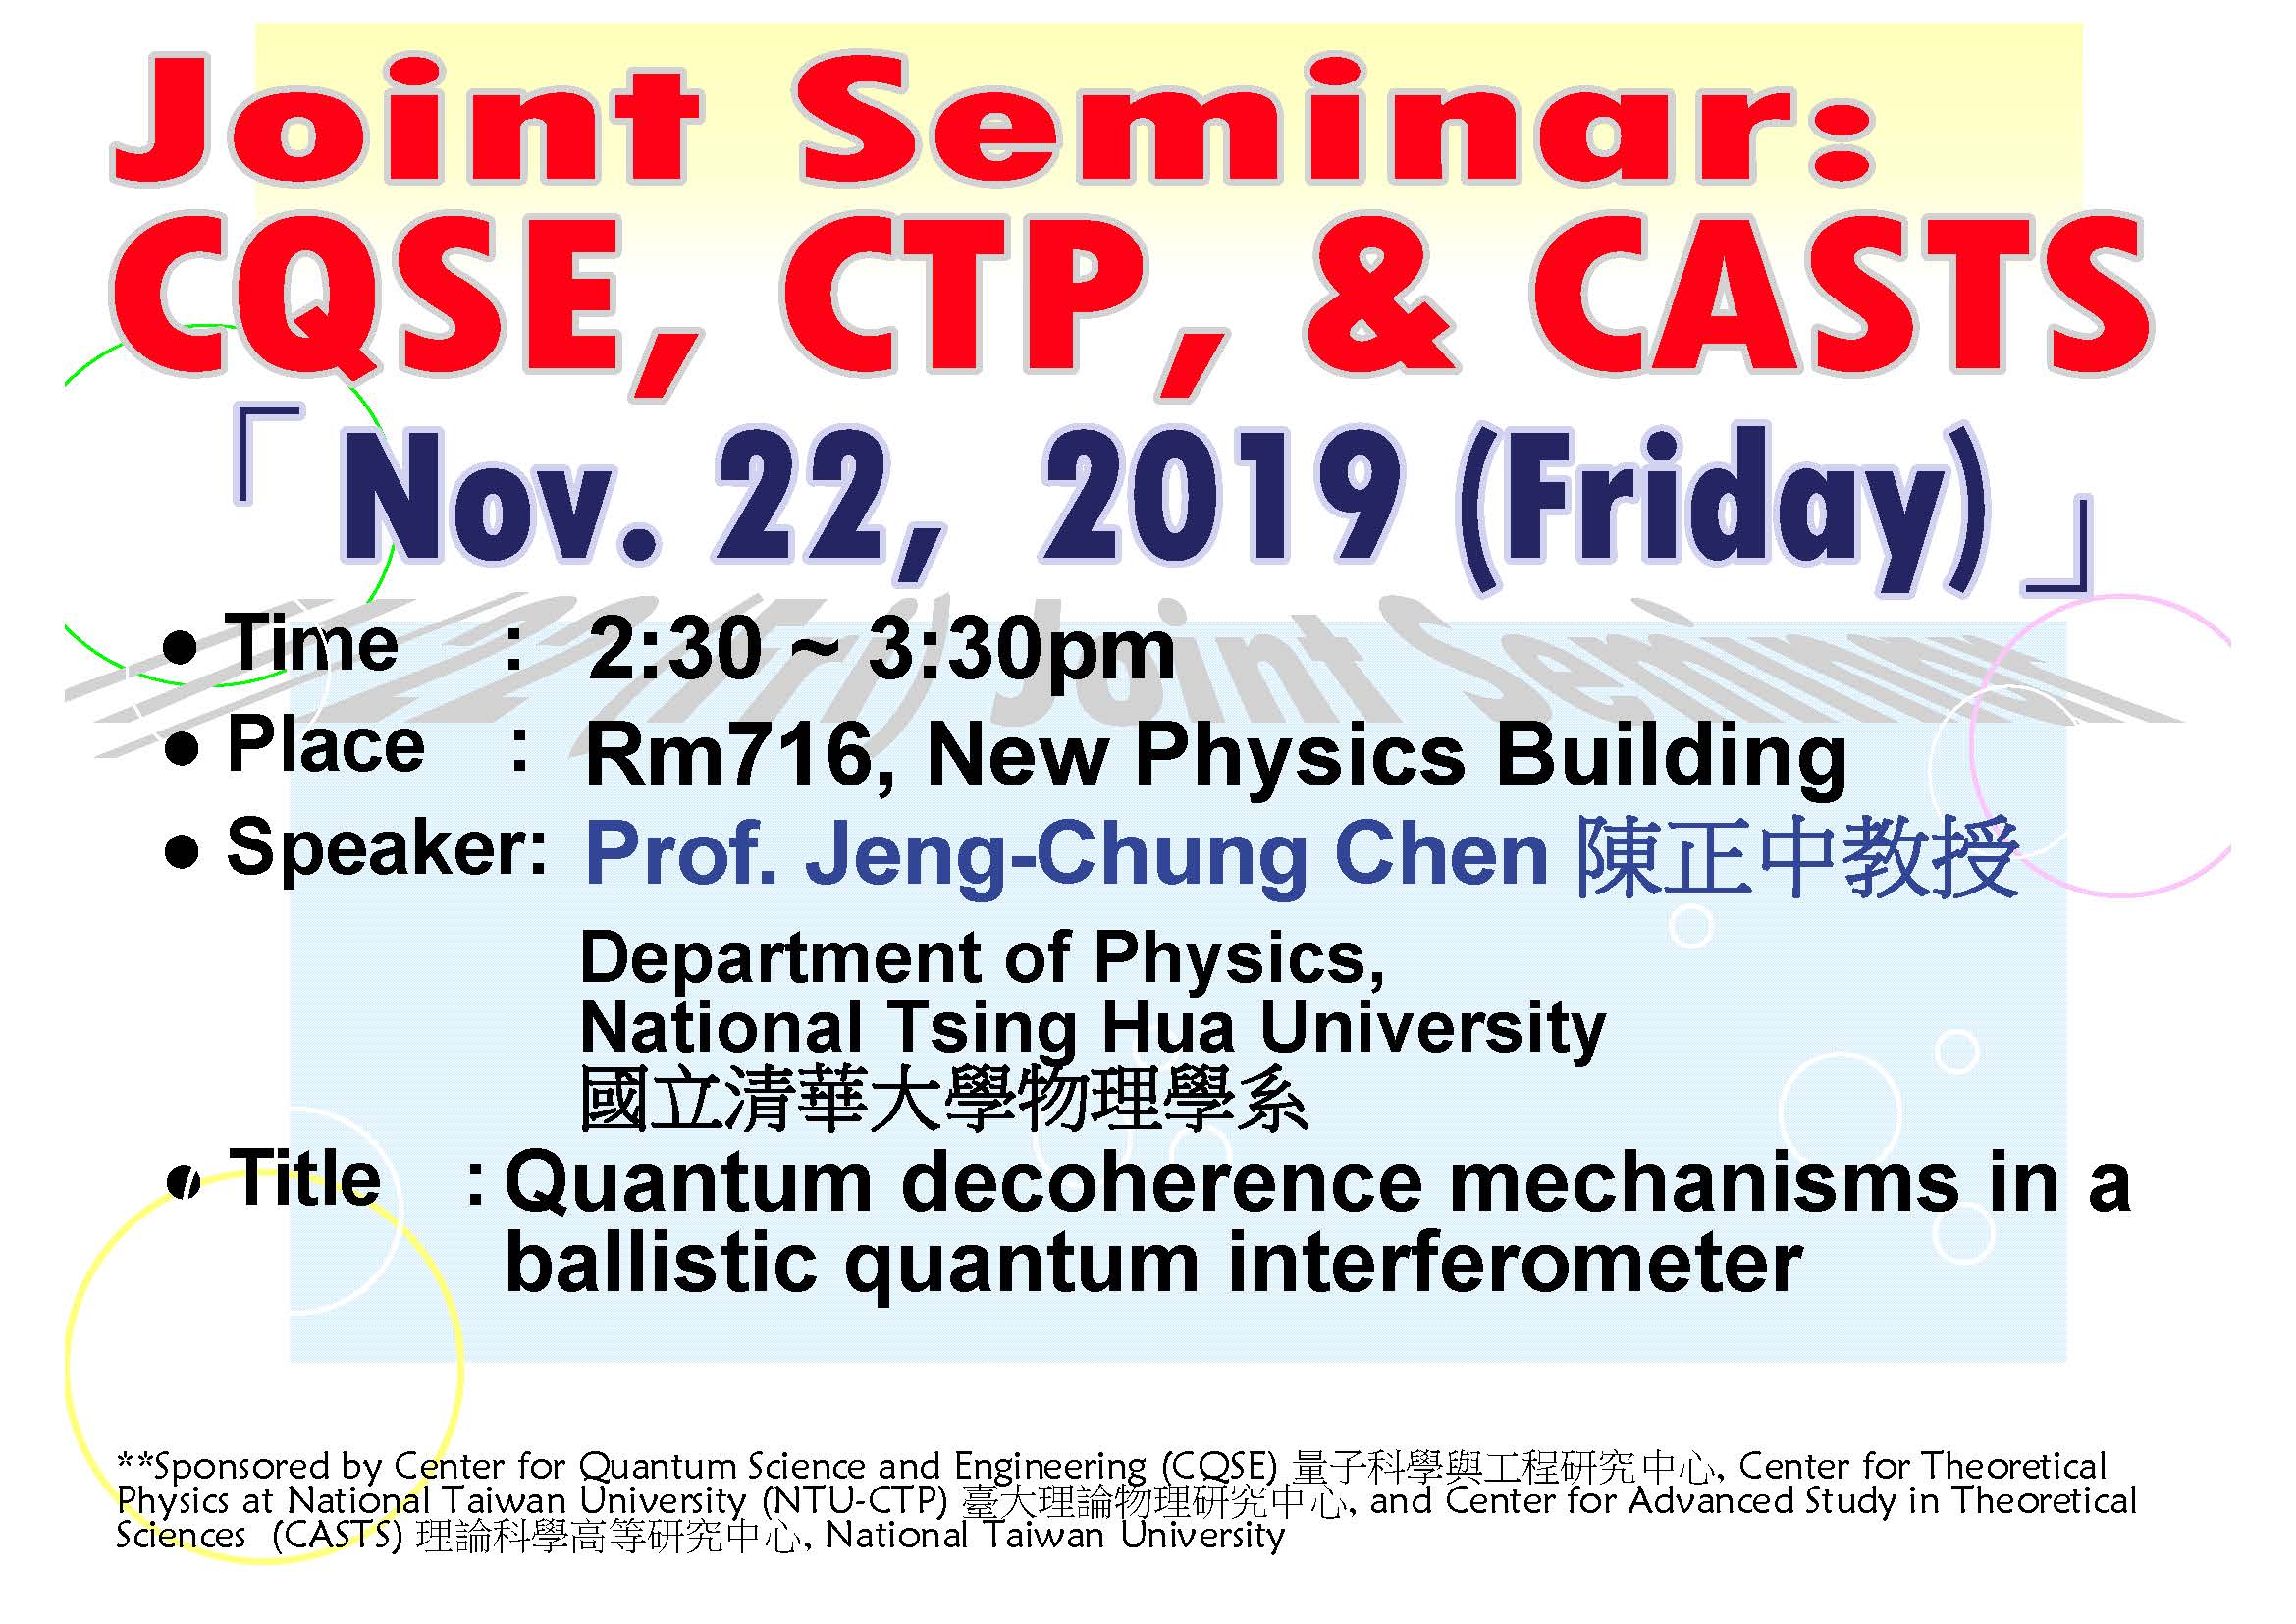 Joint Seminar – CQSE, CTP, & CASTS